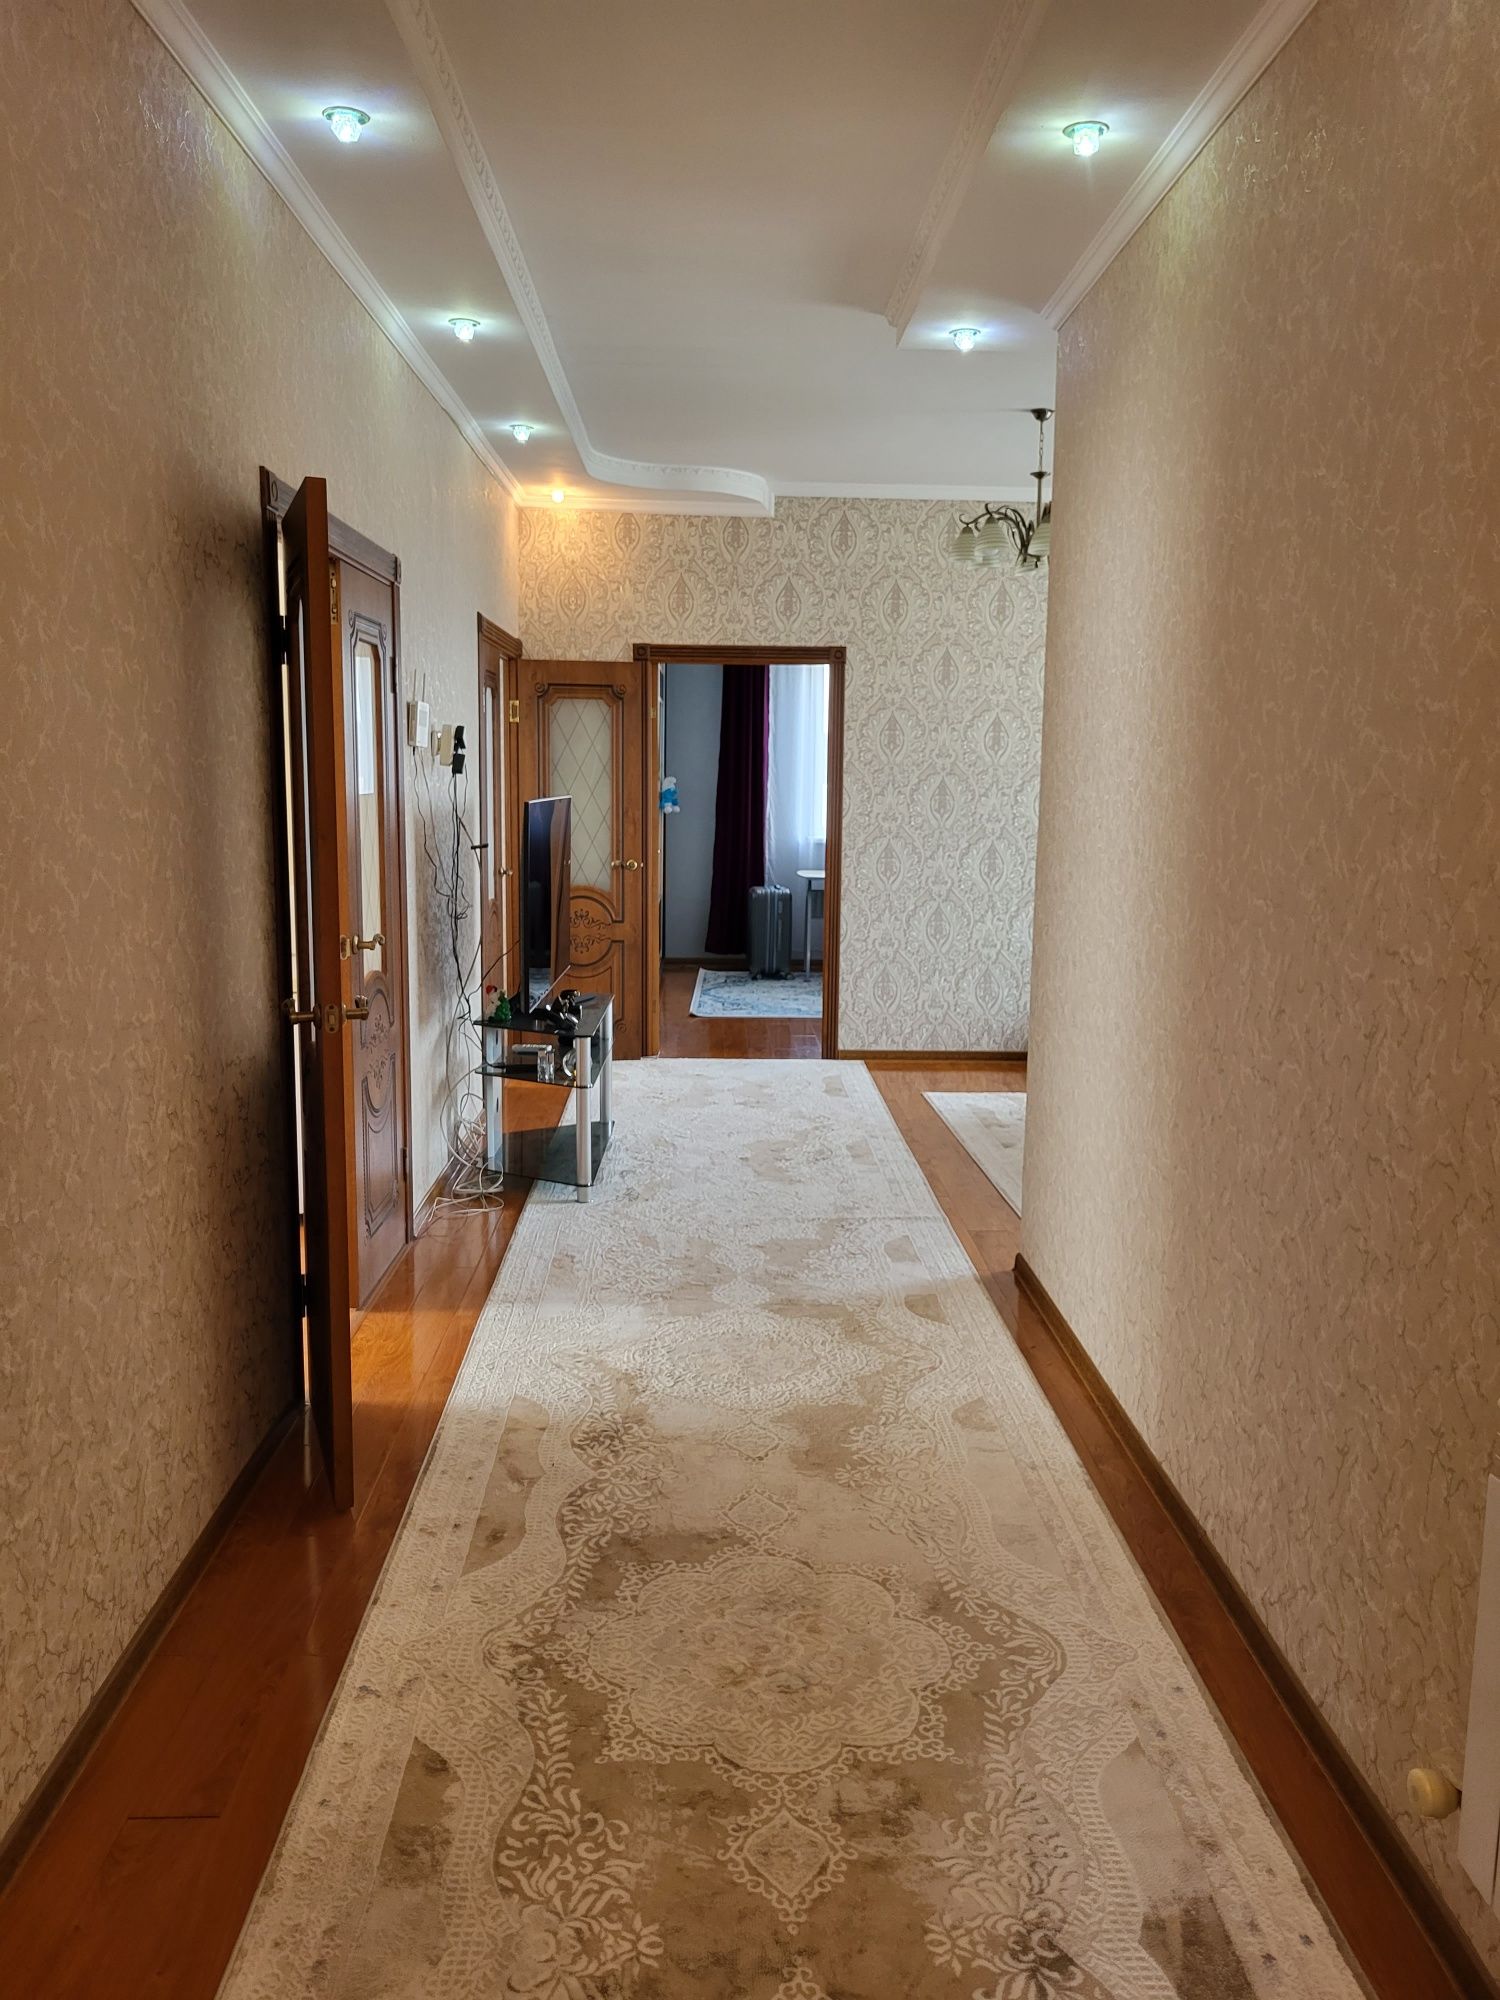 Продам дом 115 кв. 7 соток, 2 спальни,кирпичный потолка 3 м. 2014 г.